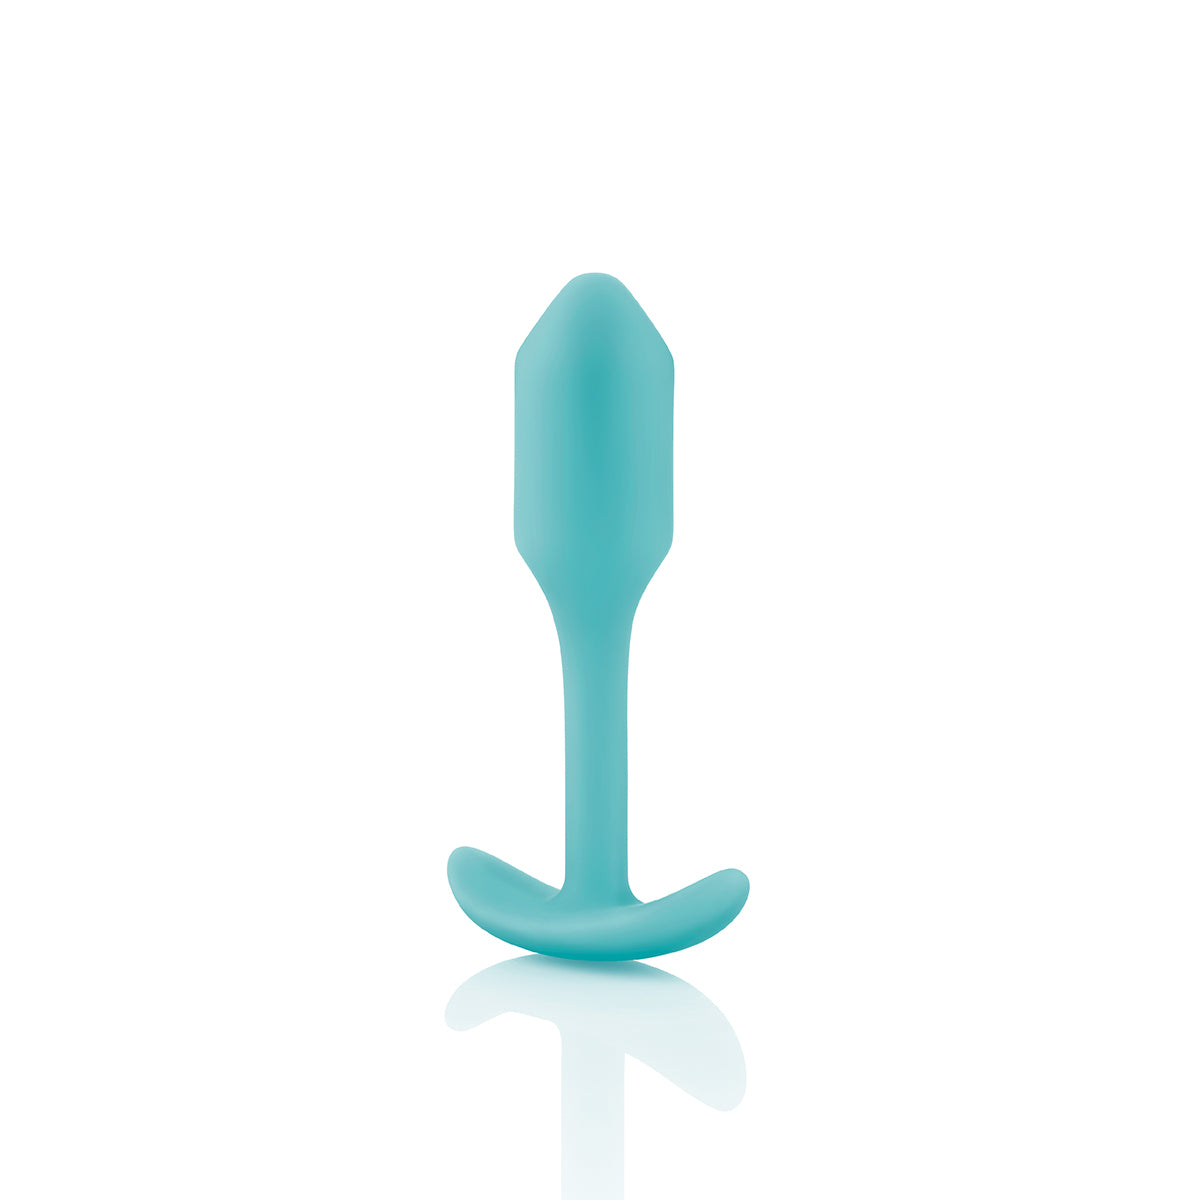 B-Vibe Snug Plug 1 (S) - Mint Intimates Adult Boutique